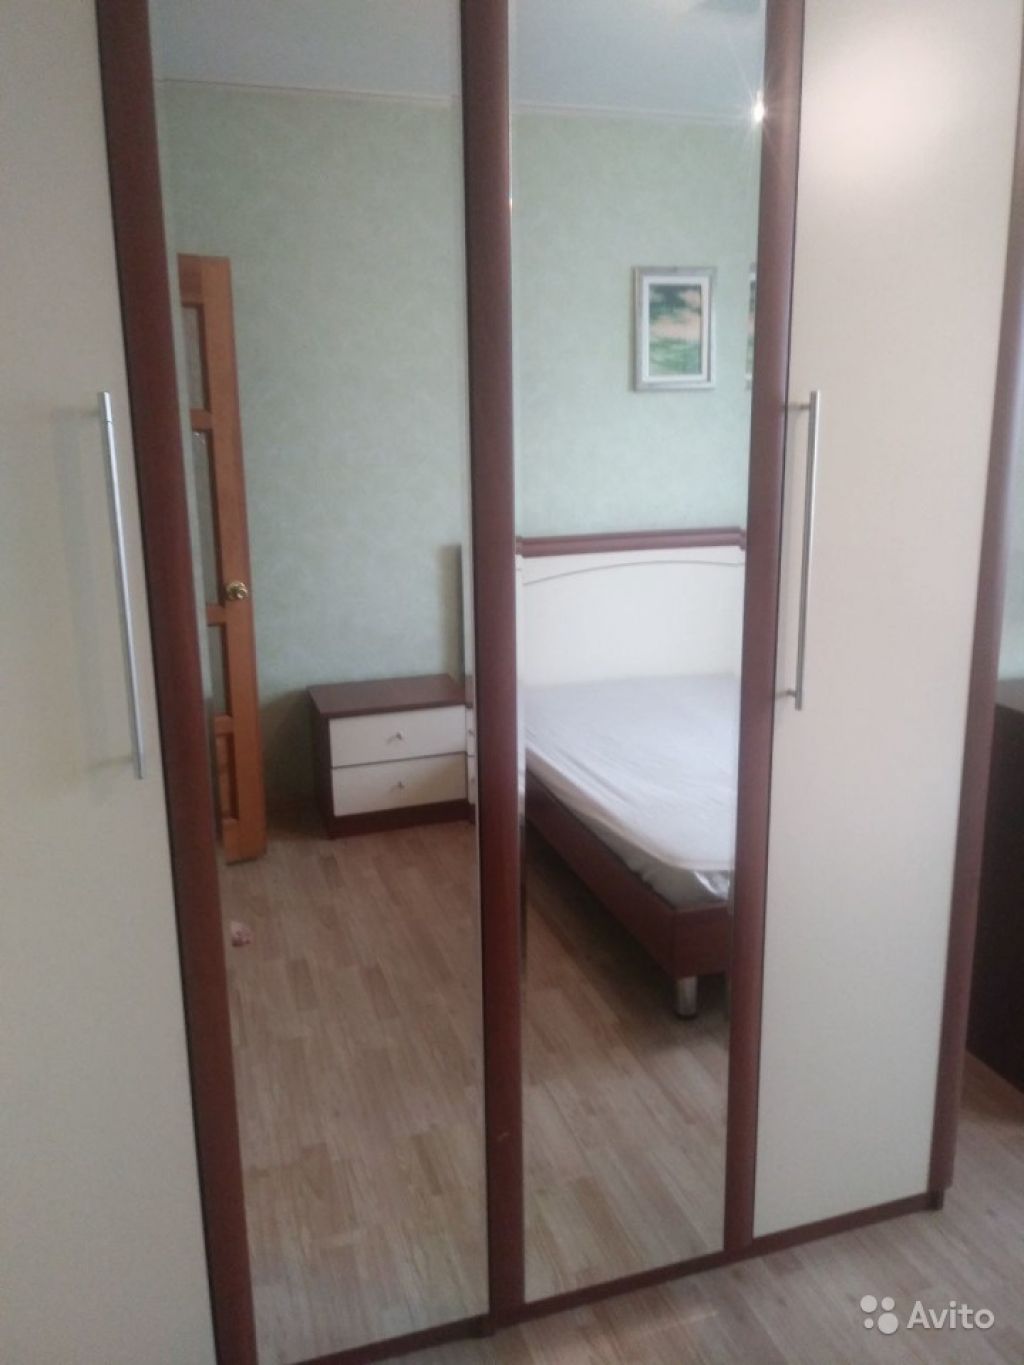 Сдам комнату Комната 16 м² в 2-к квартире на 13 этаже 14-этажного панельного дома в Москве. Фото 1